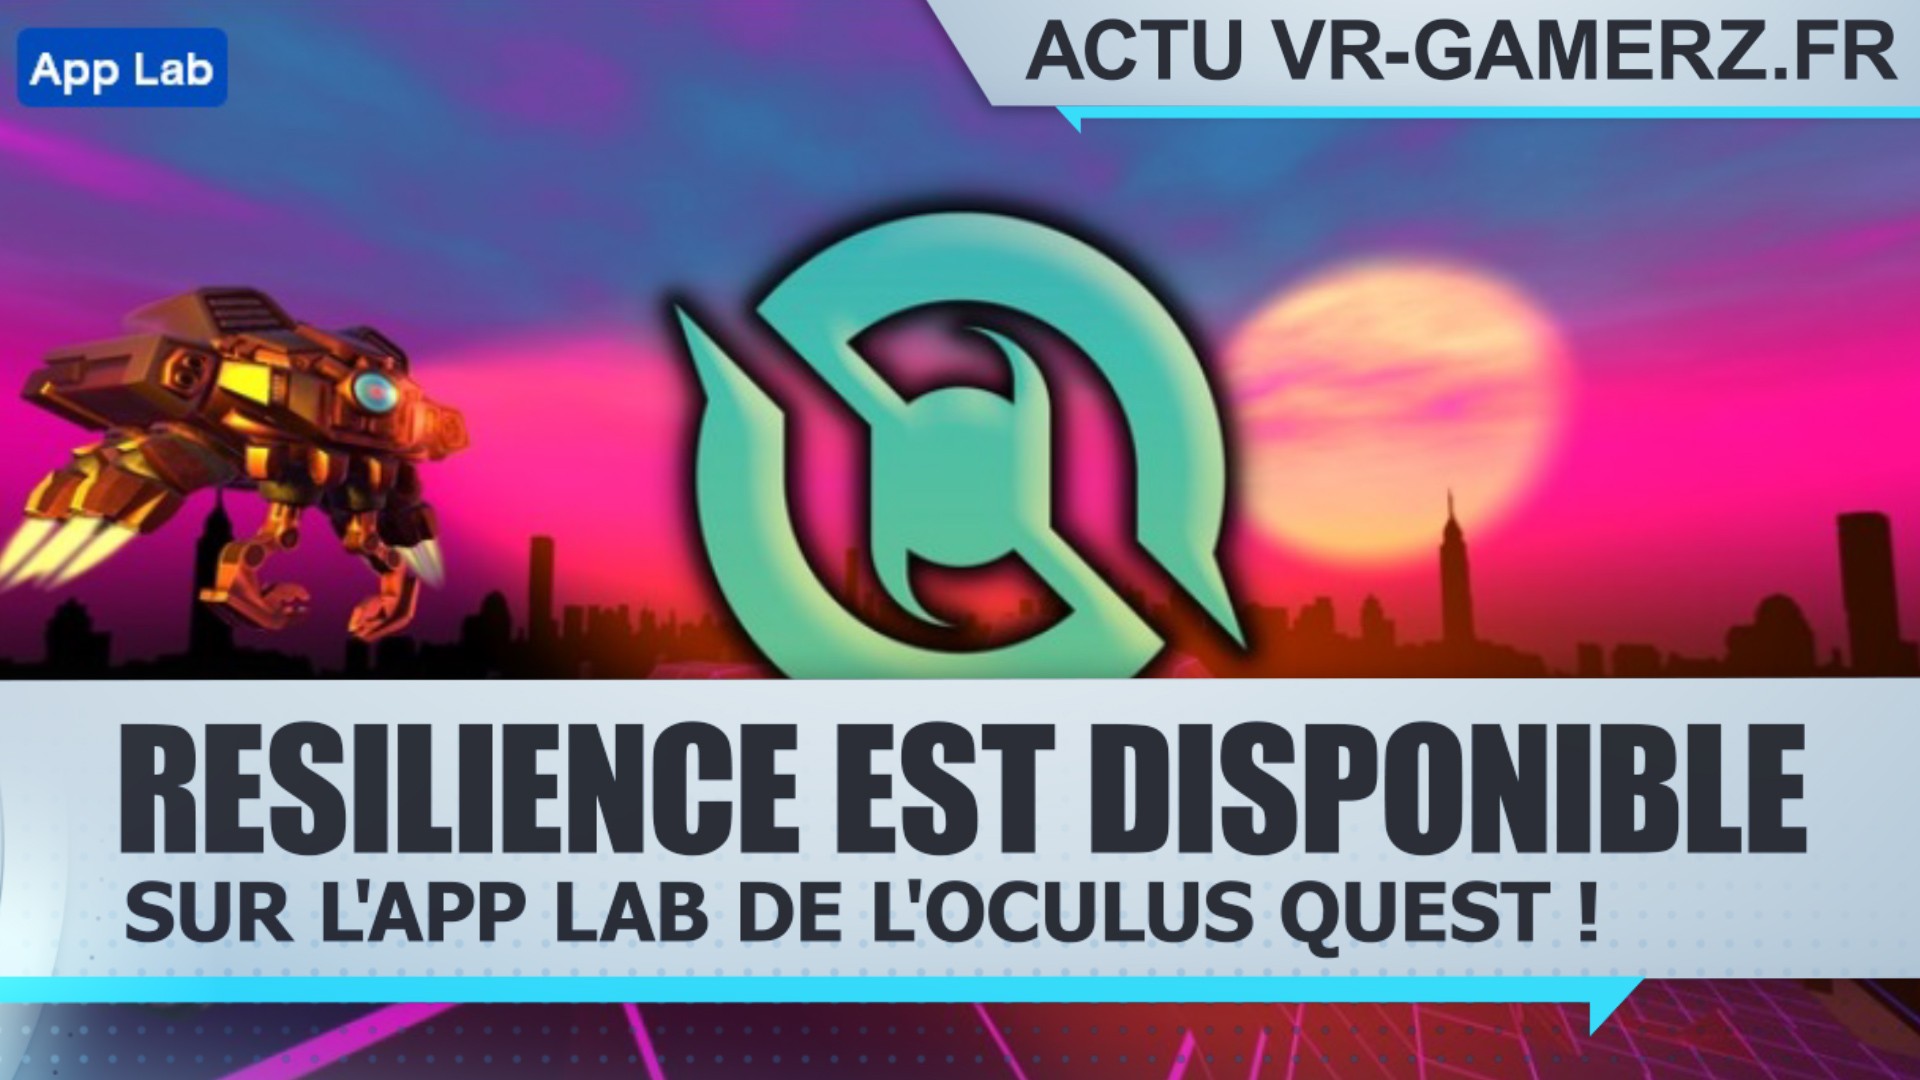 Resilience est disponible sur l’App lab de l’Oculus quest !